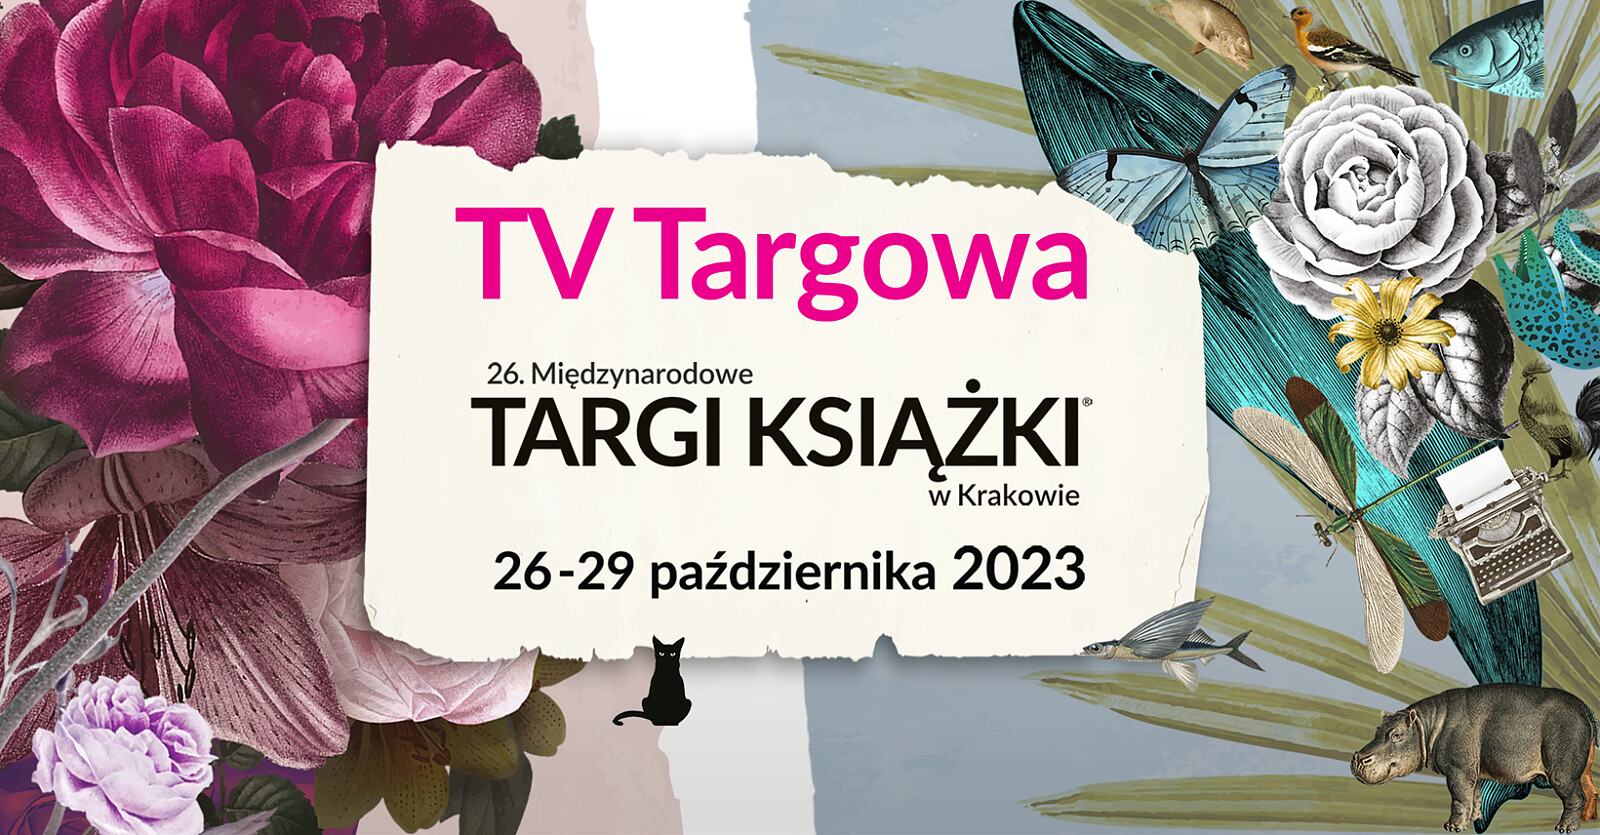 KSIAZKA'23-TV-Targowa(1640x856).jpg [1.04 MB]